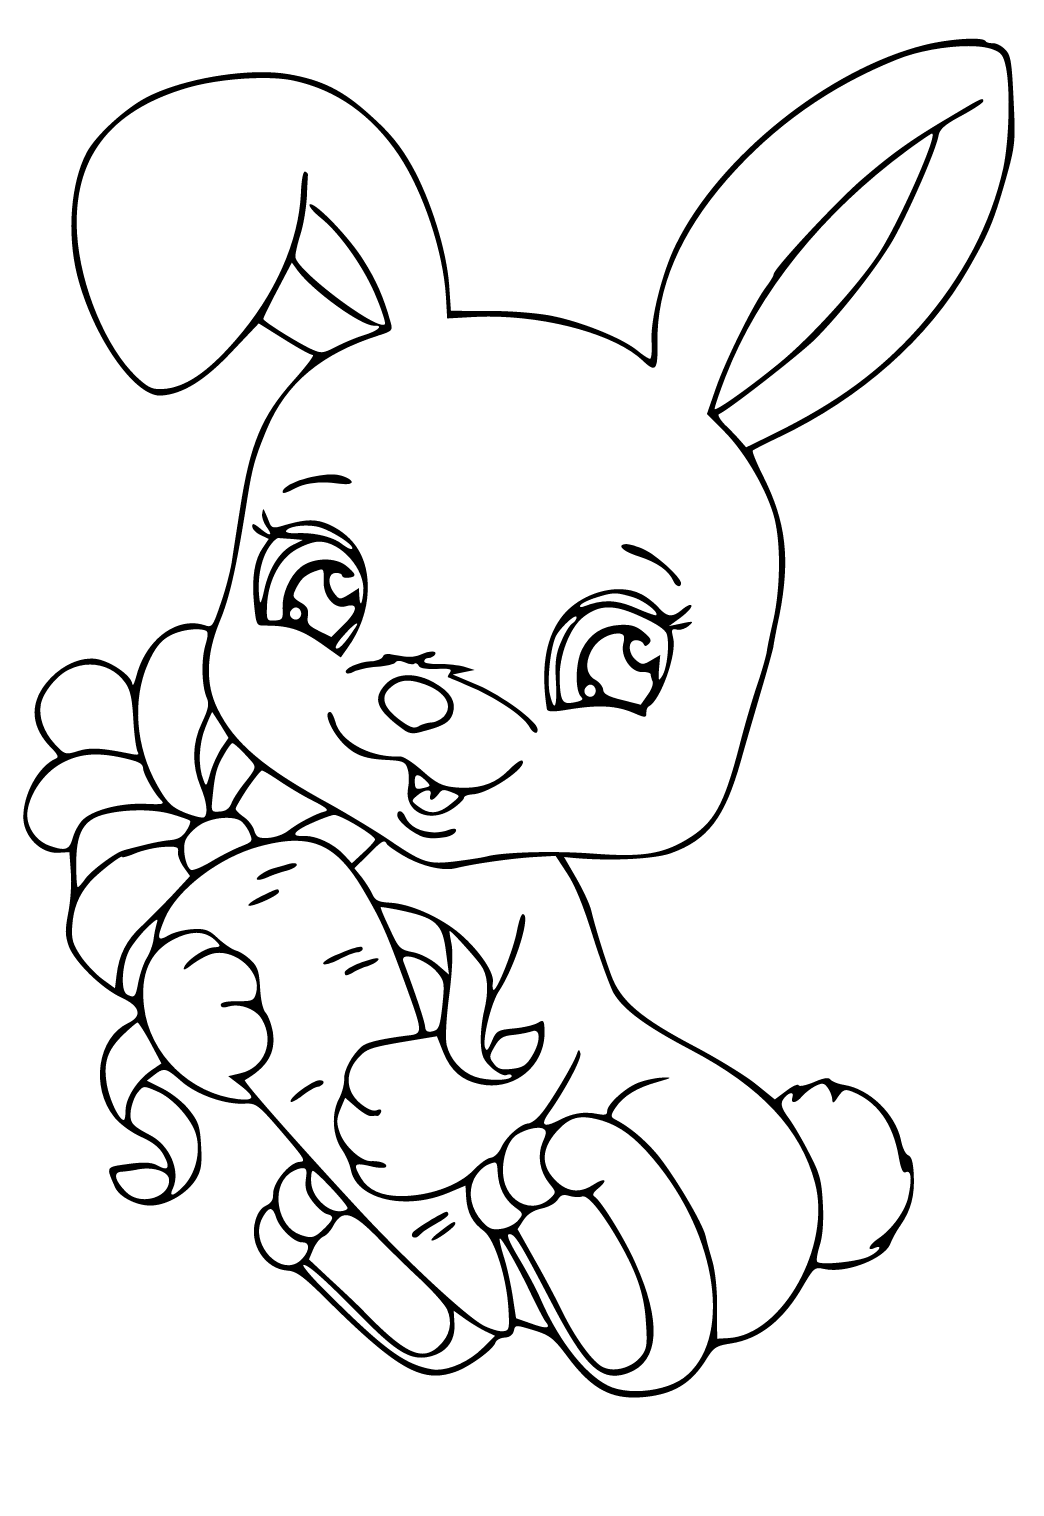 Xem hơn 48 ảnh về hình vẽ con thỏ để tô màu  daotaonec